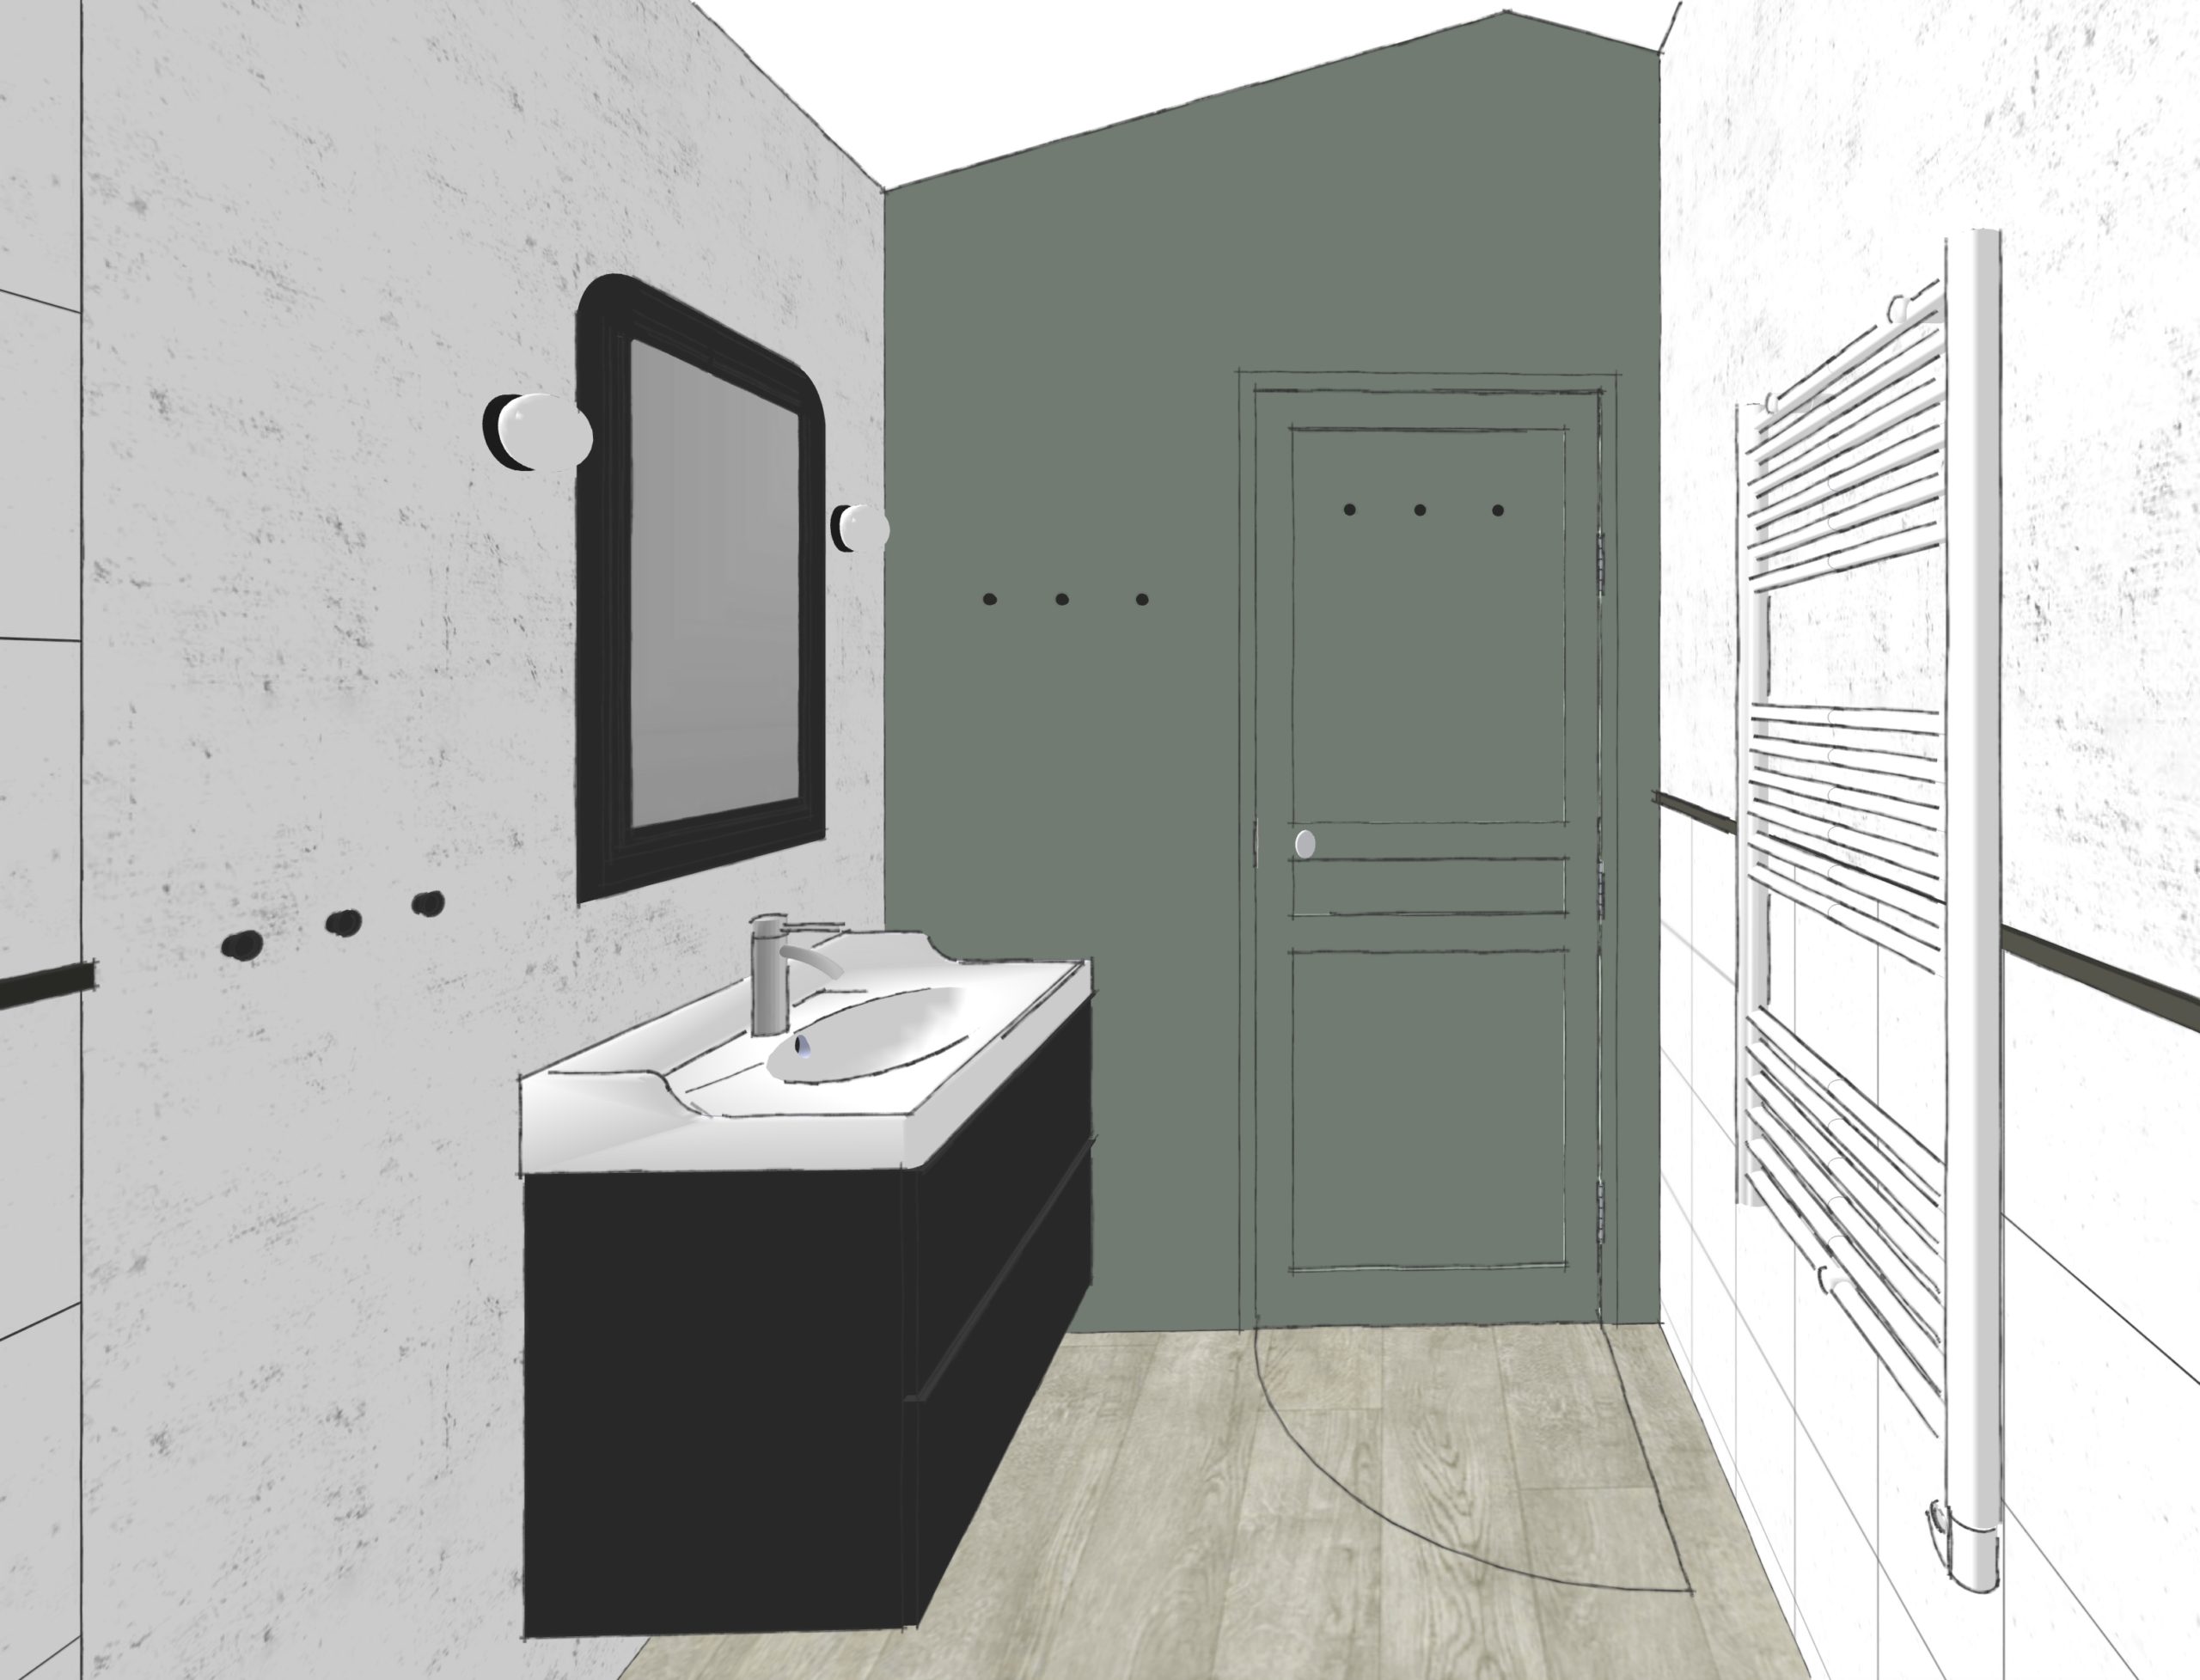 dessin-3d-amenagement-interieur-salle-bain